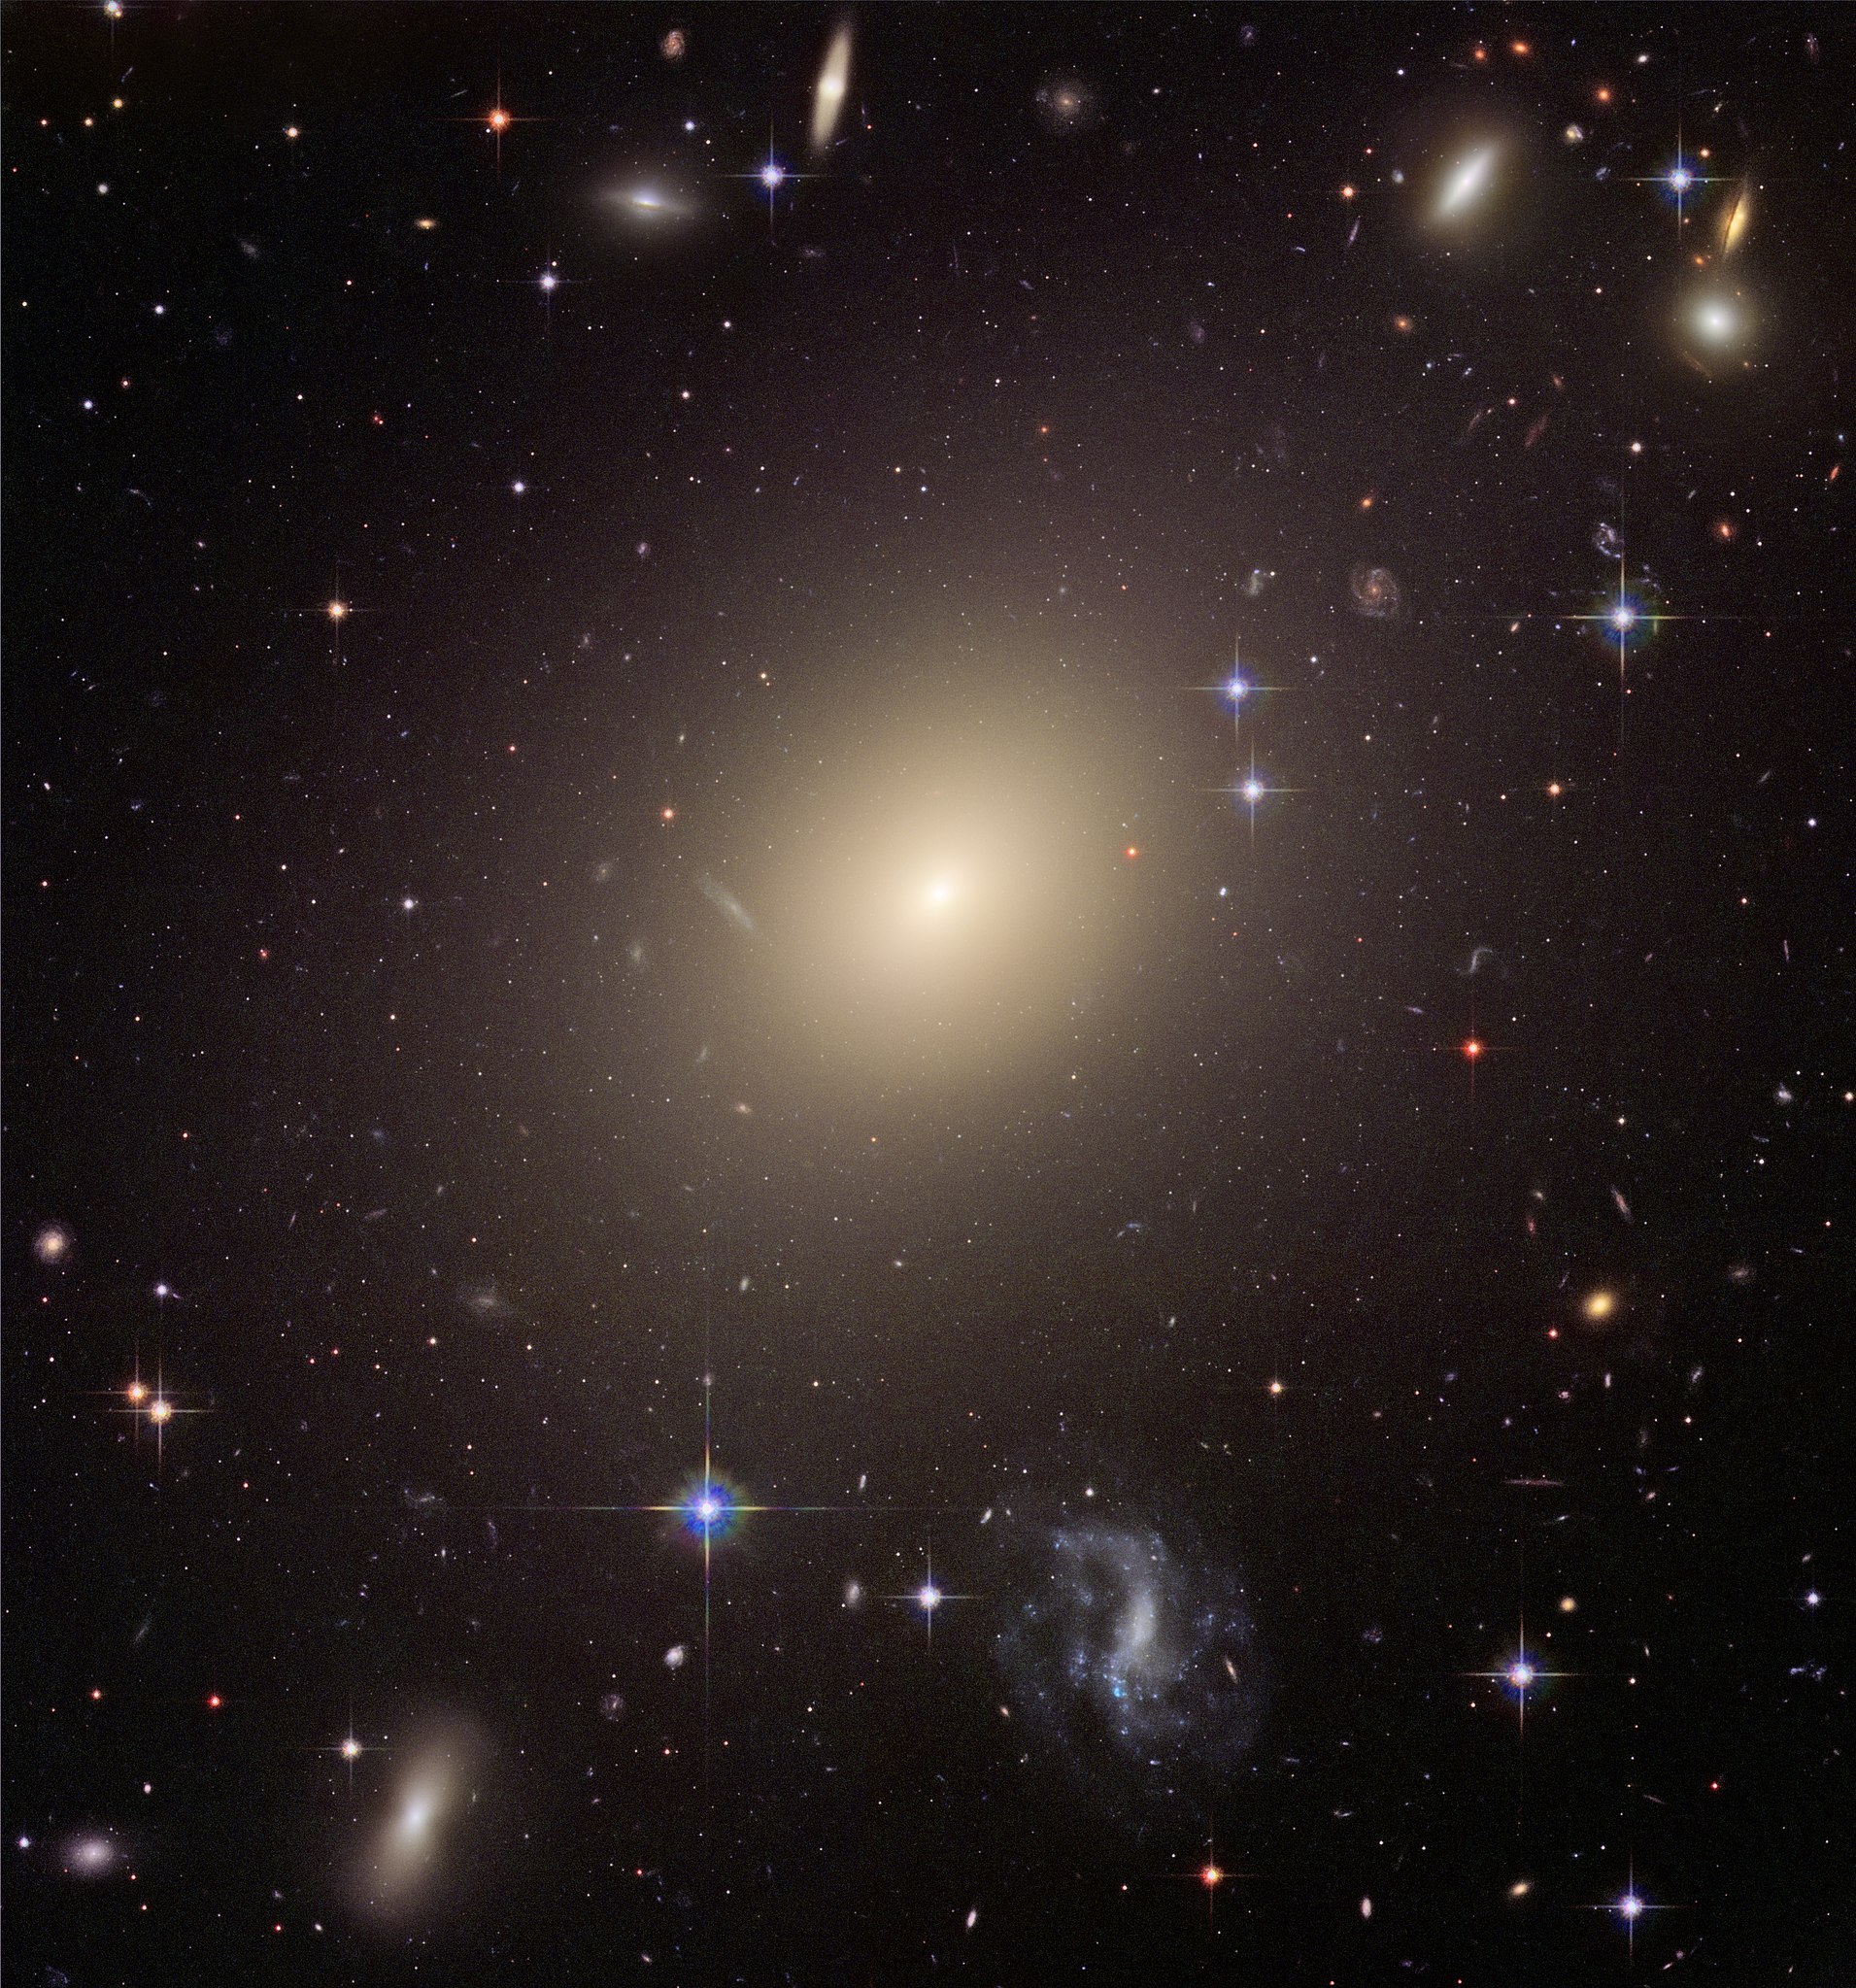 Abell S740 Galaxy ESO 325-G004